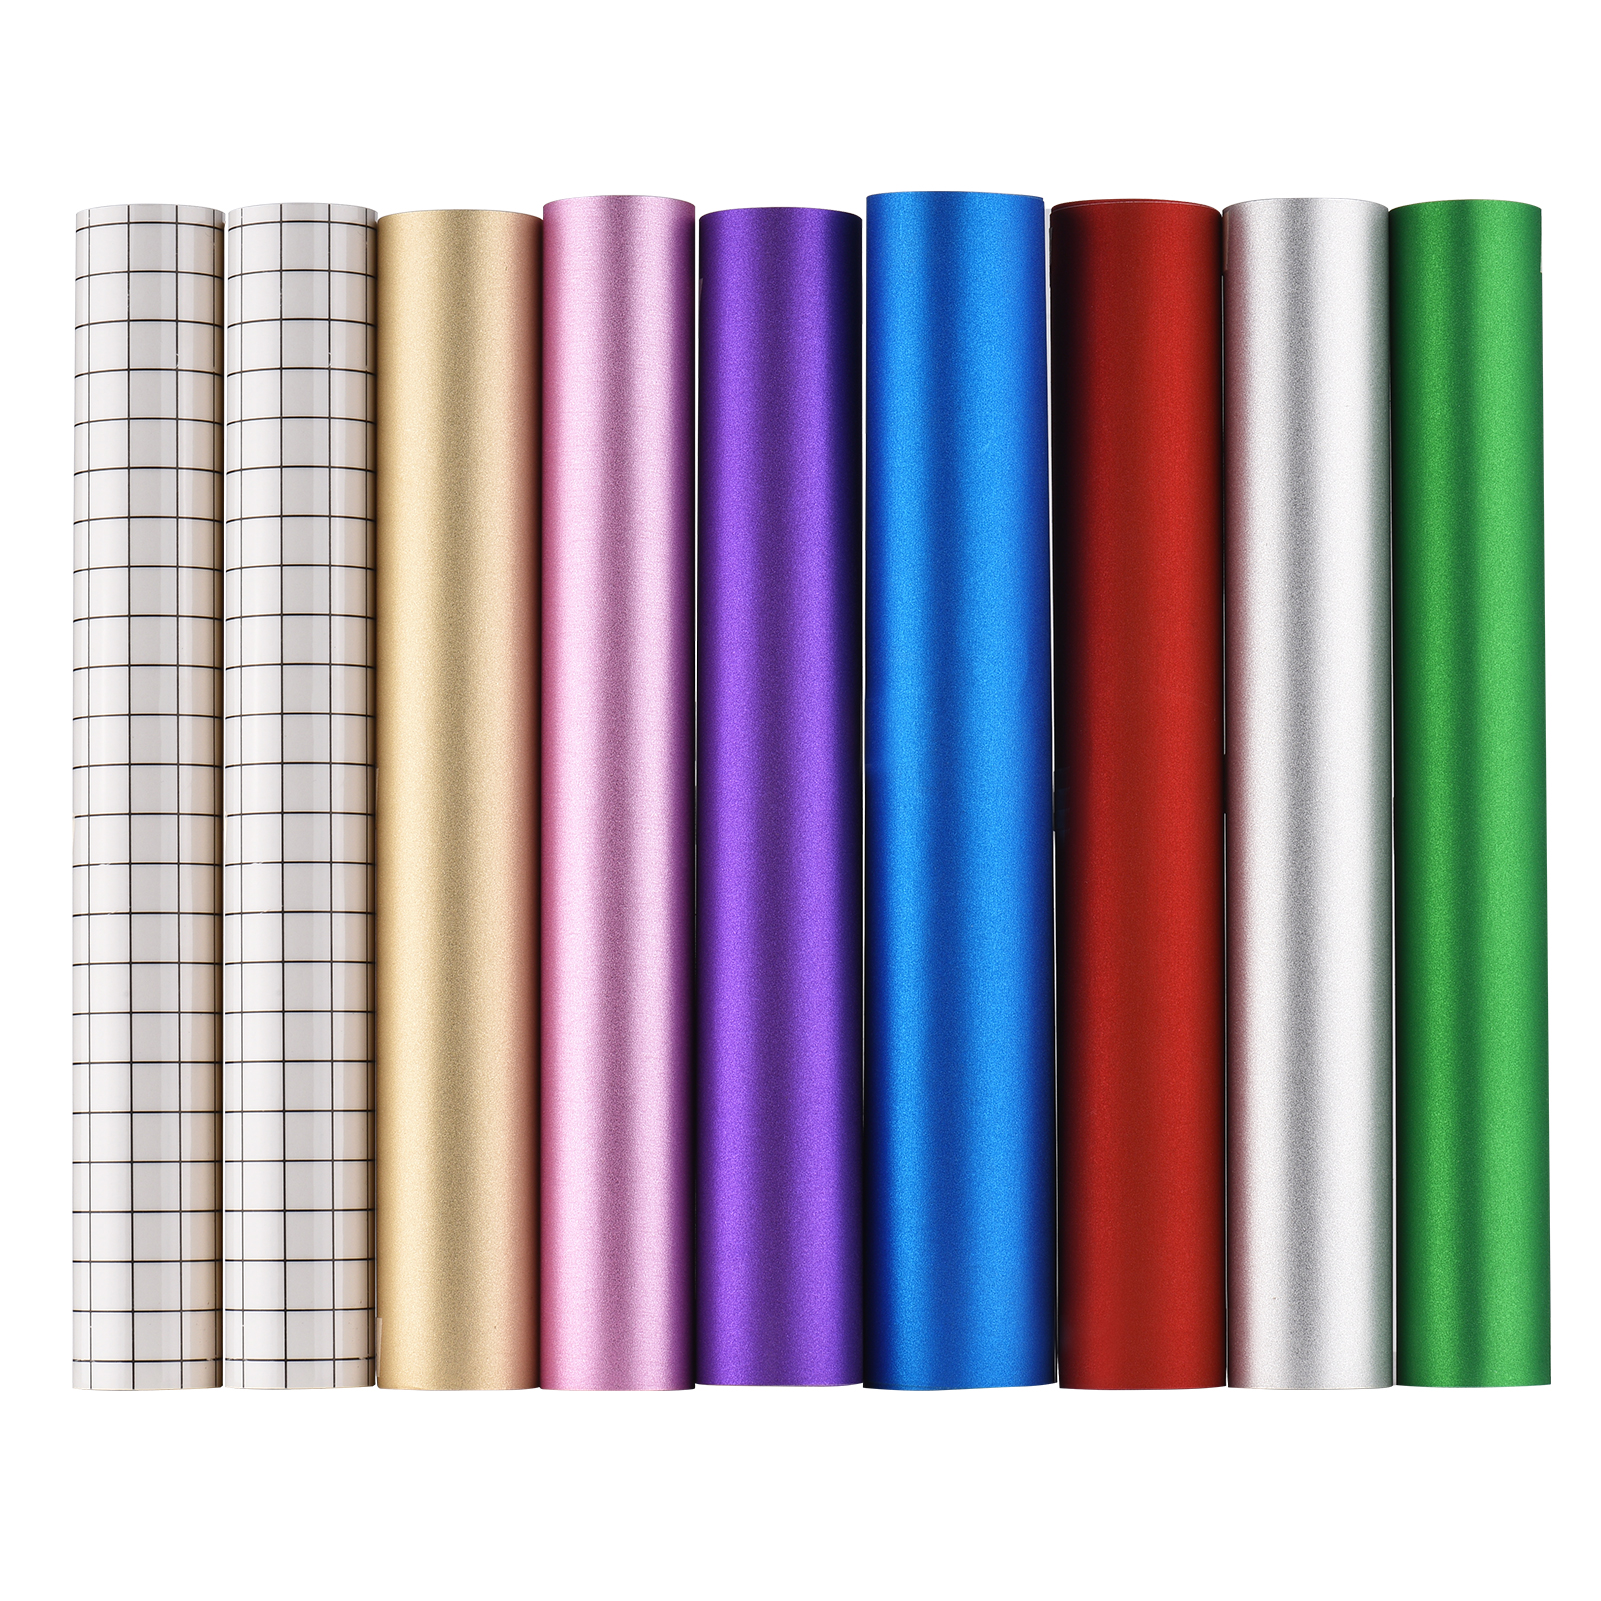 Vinilo adhesivo holográfico con purpurina para manualidades, 30,5 x 30,5 cm  / 12 x 12 pulgadas, 7 co Eccomum Película de vinilo